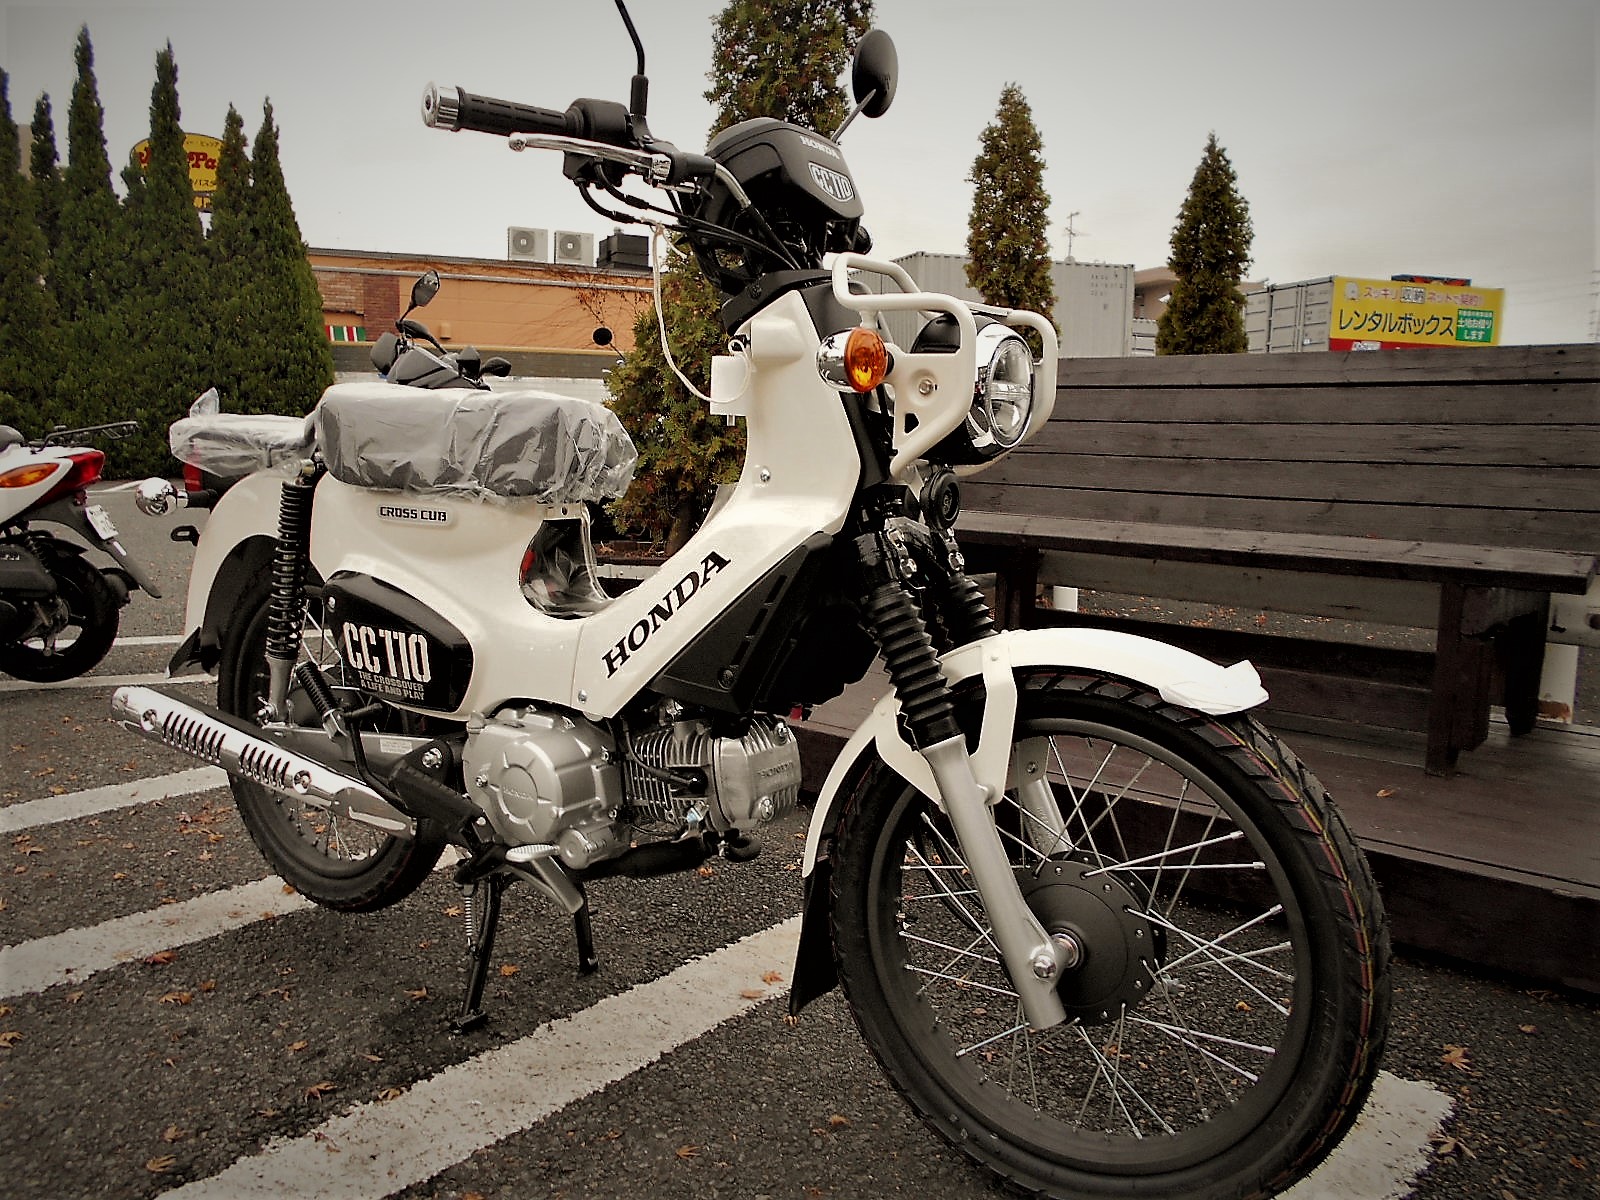 クロスカブ C125 現在1台ずつあります 最新情報 U Media ユーメディア 中古バイク 新車バイク探しの決定版 神奈川 東京でバイク探すならユーメディア